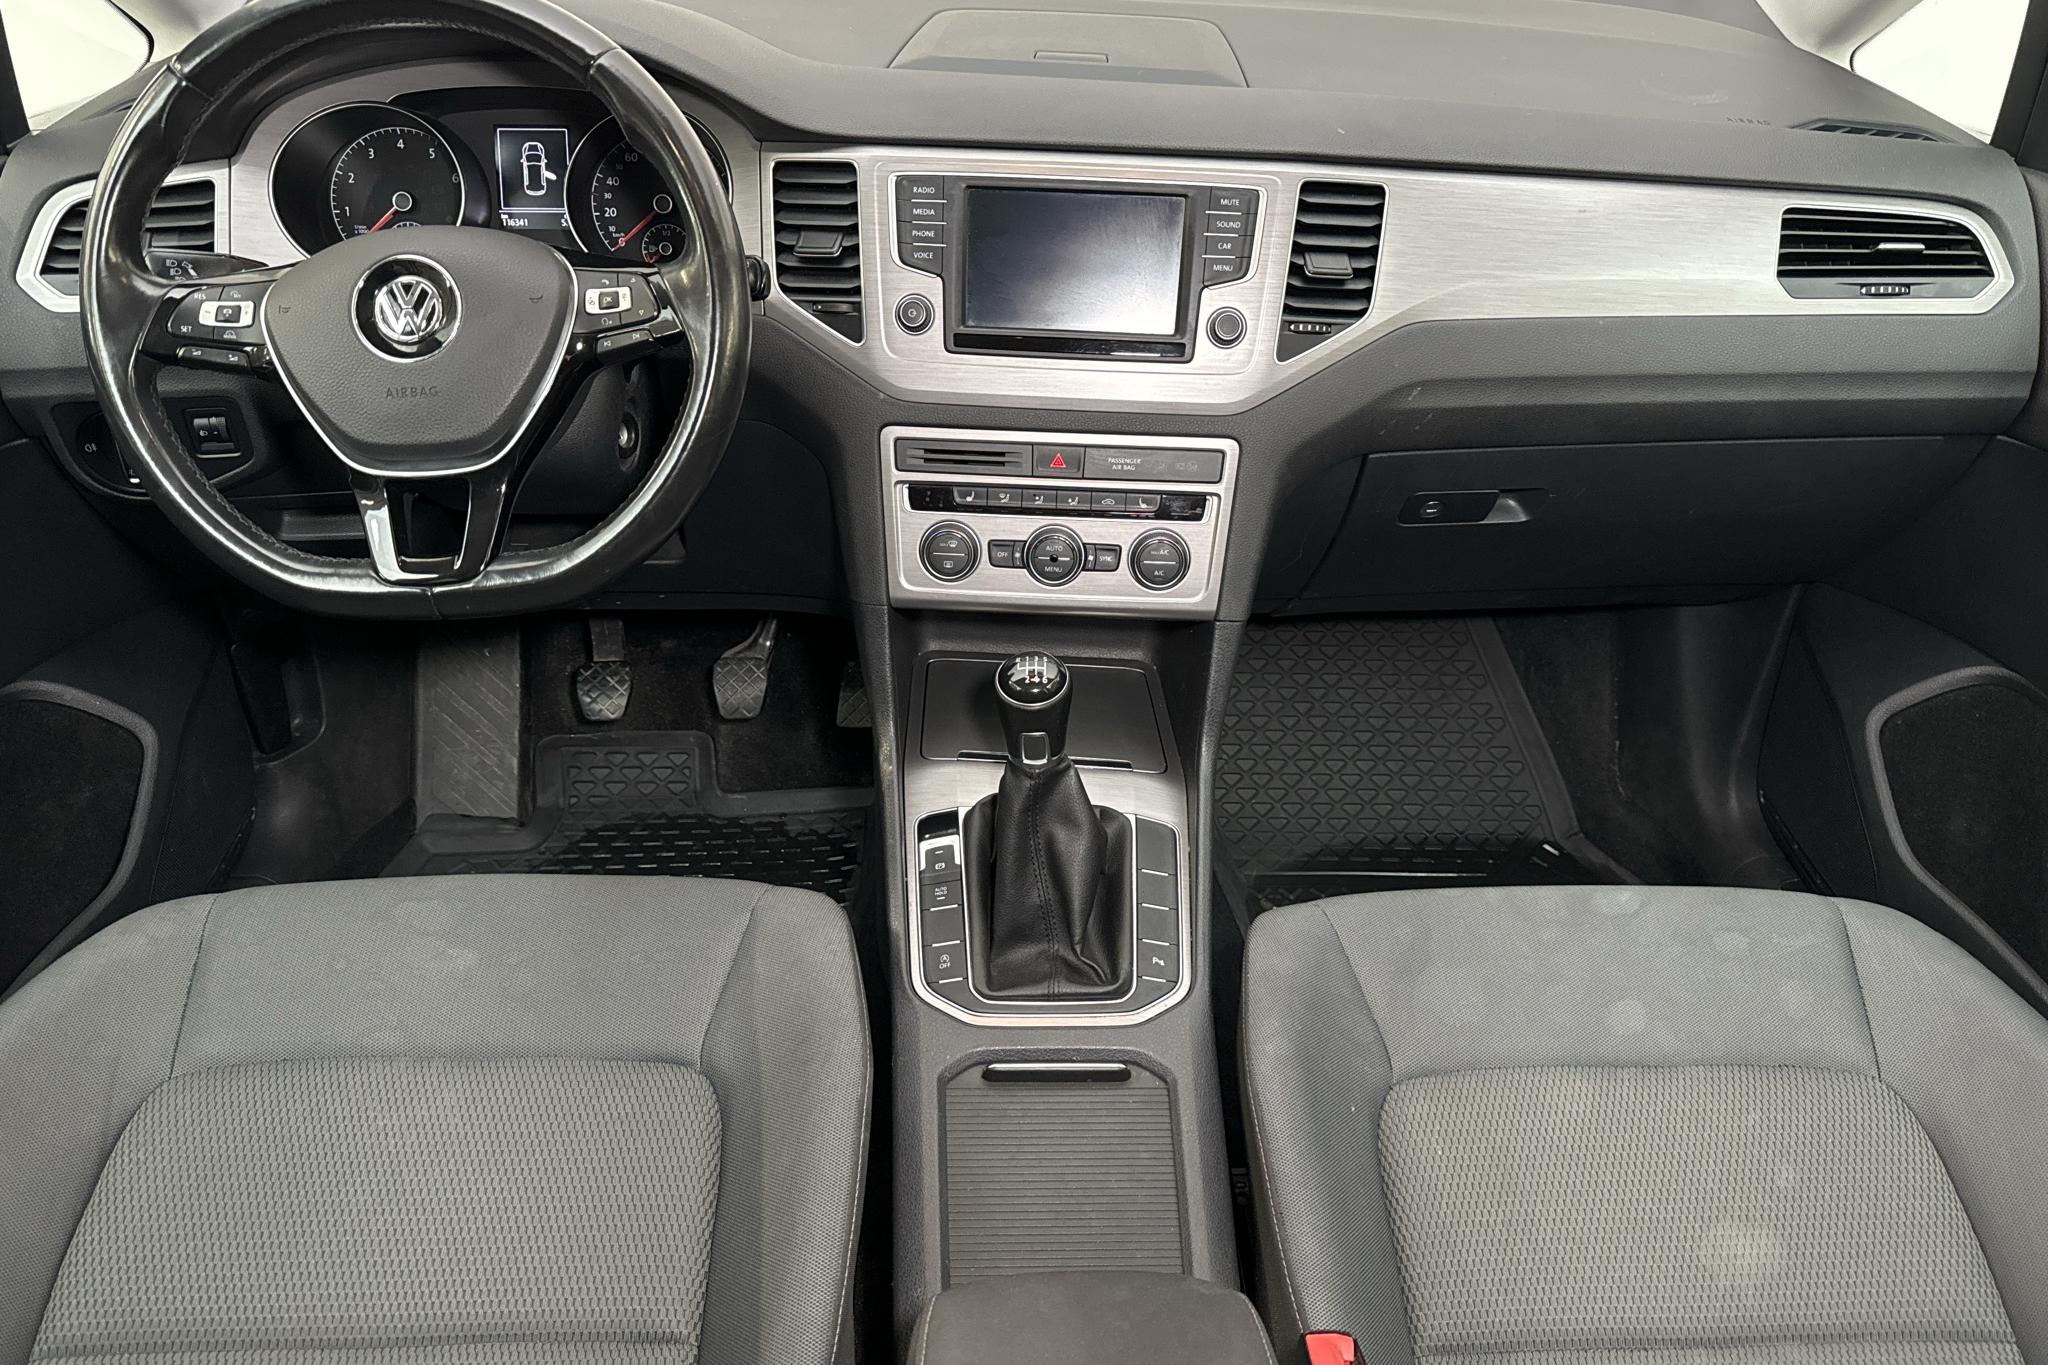 VW Golf VII 1.4 BlueMotion Technology MultiFuel E85 Sportsvan (125hk) - 116 340 km - Manual - white - 2016